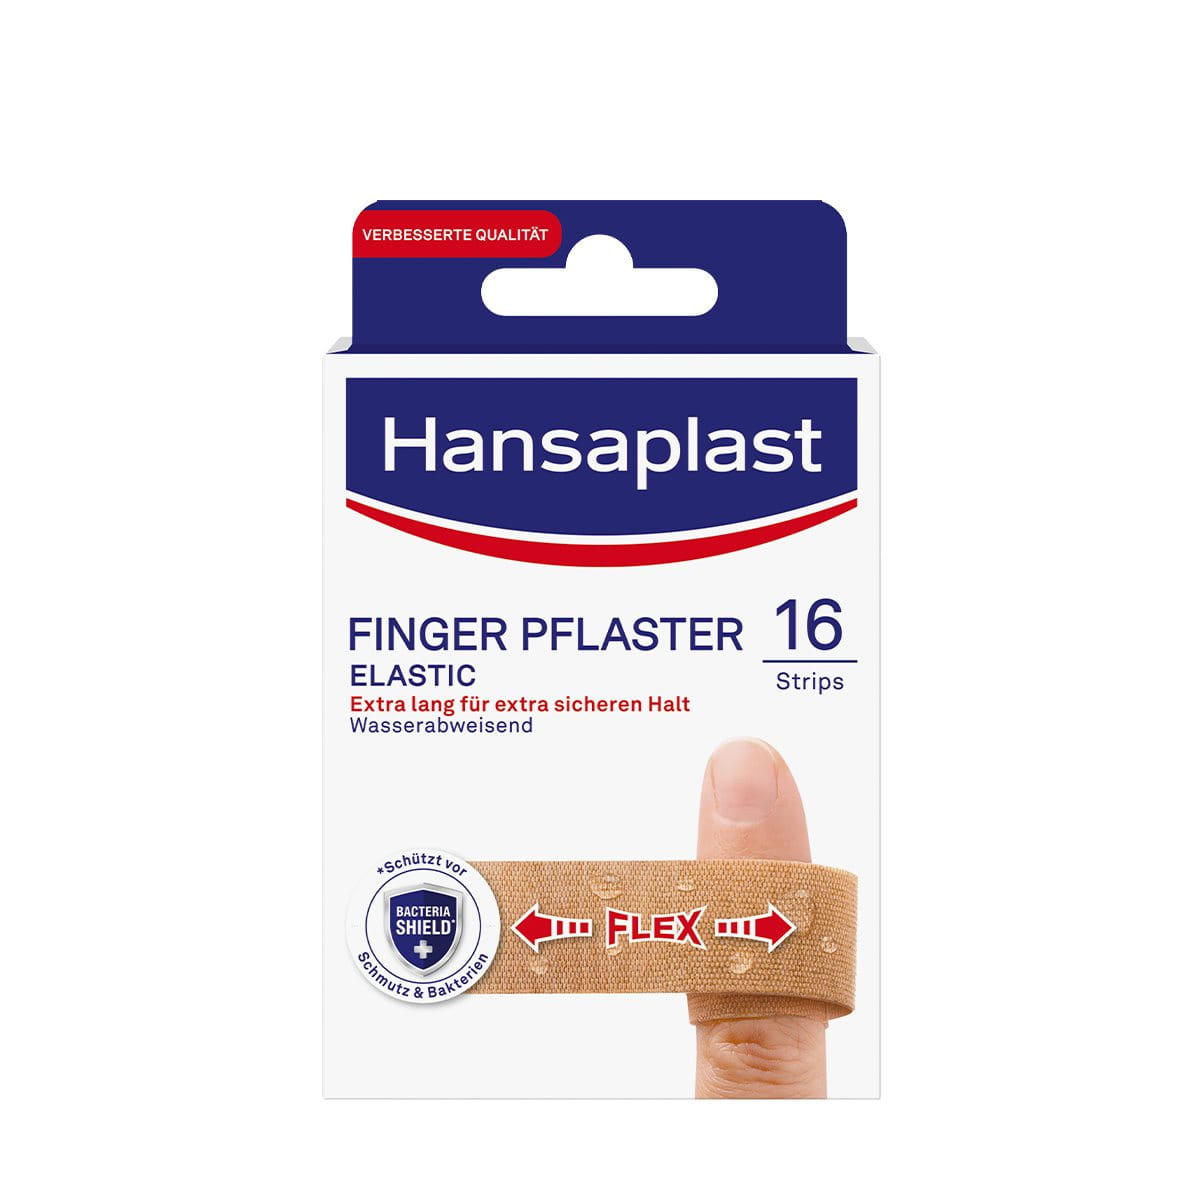 Fingerpflaster von Hansaplast